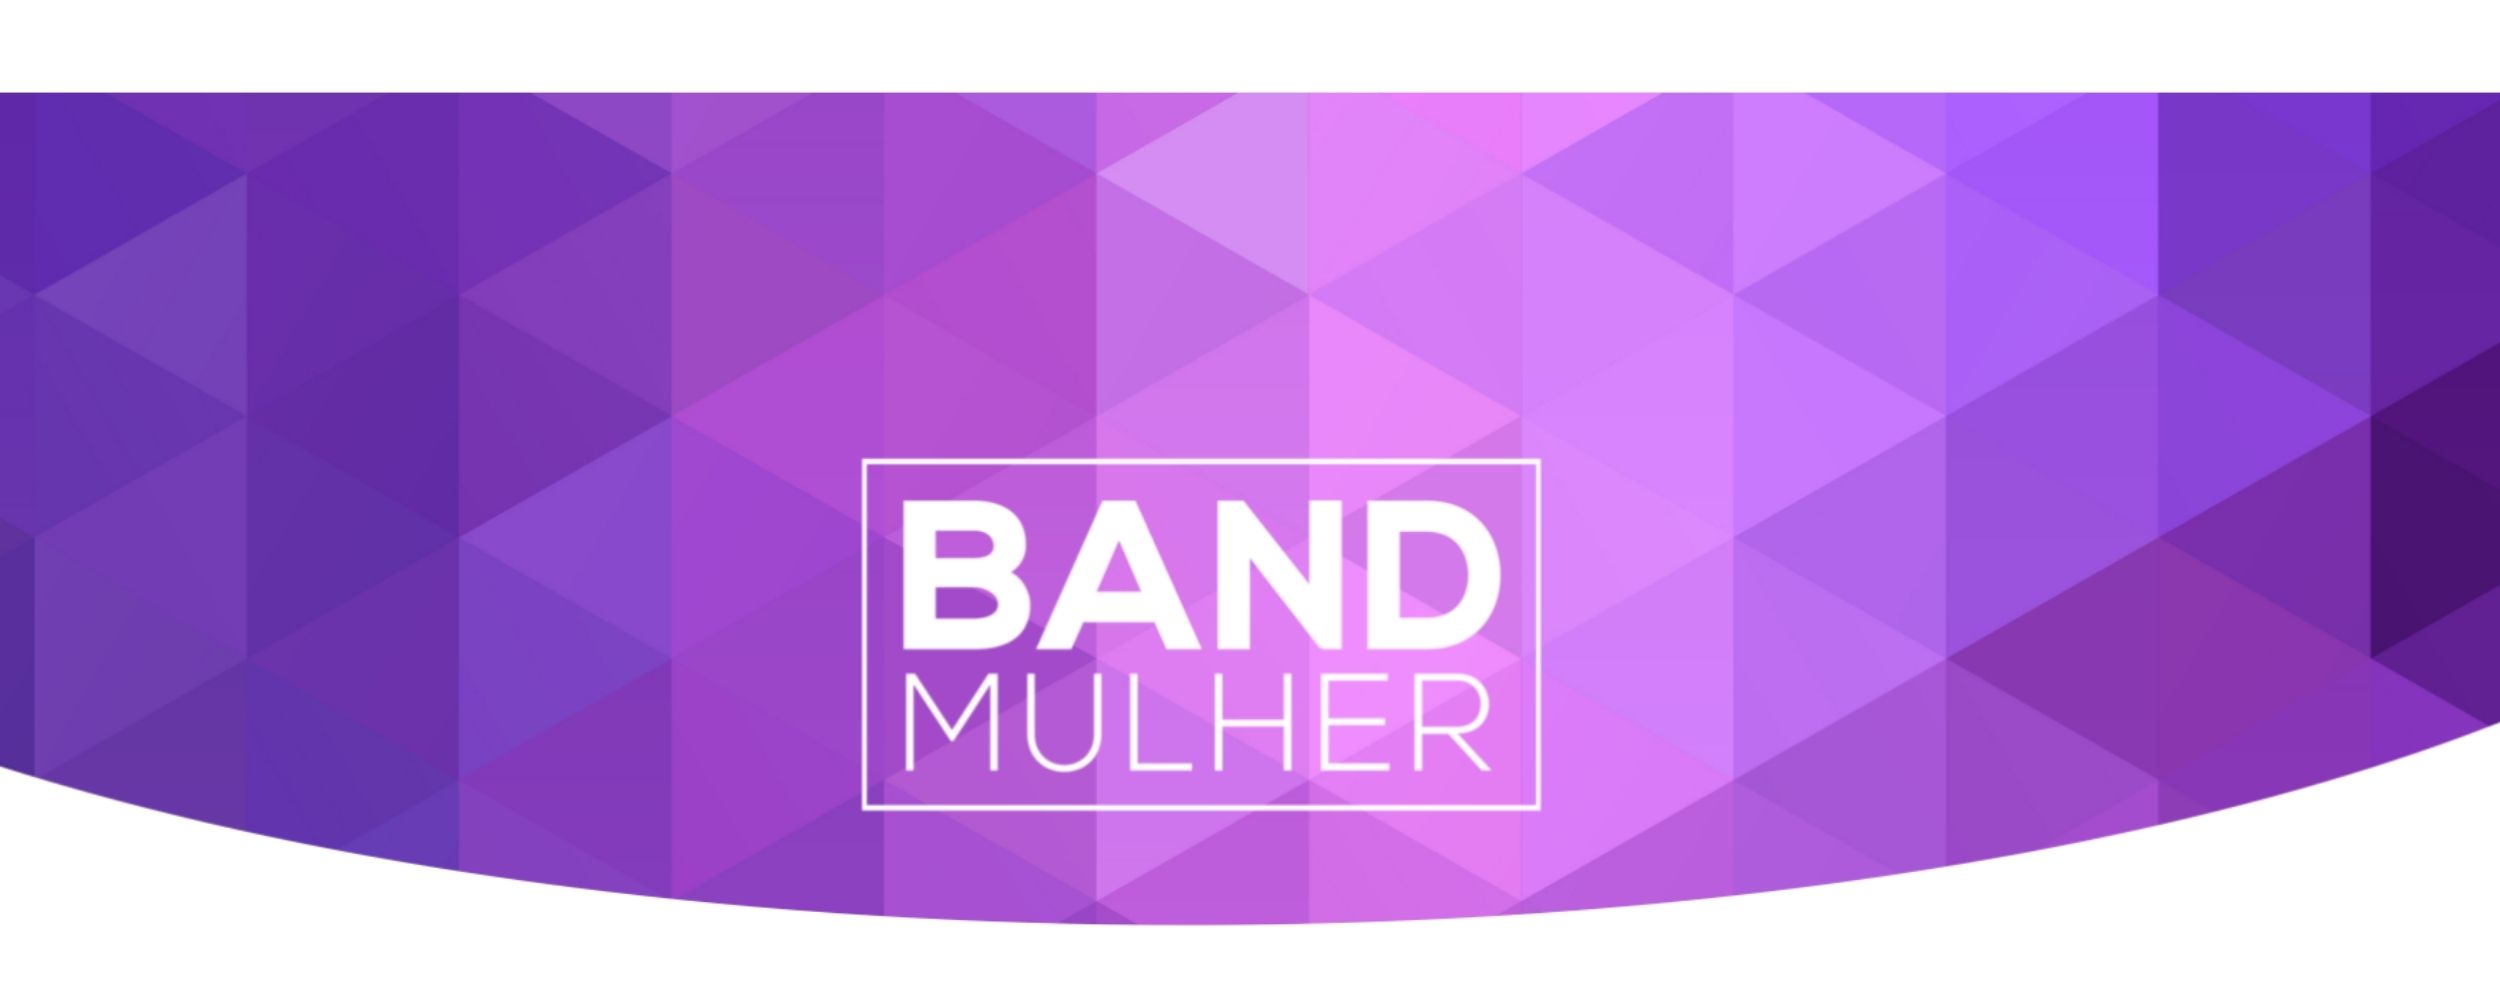 Fred Burlamaqui fala sobre “A importância de colocar seu negócio na internet” – Band Mulher Paraná